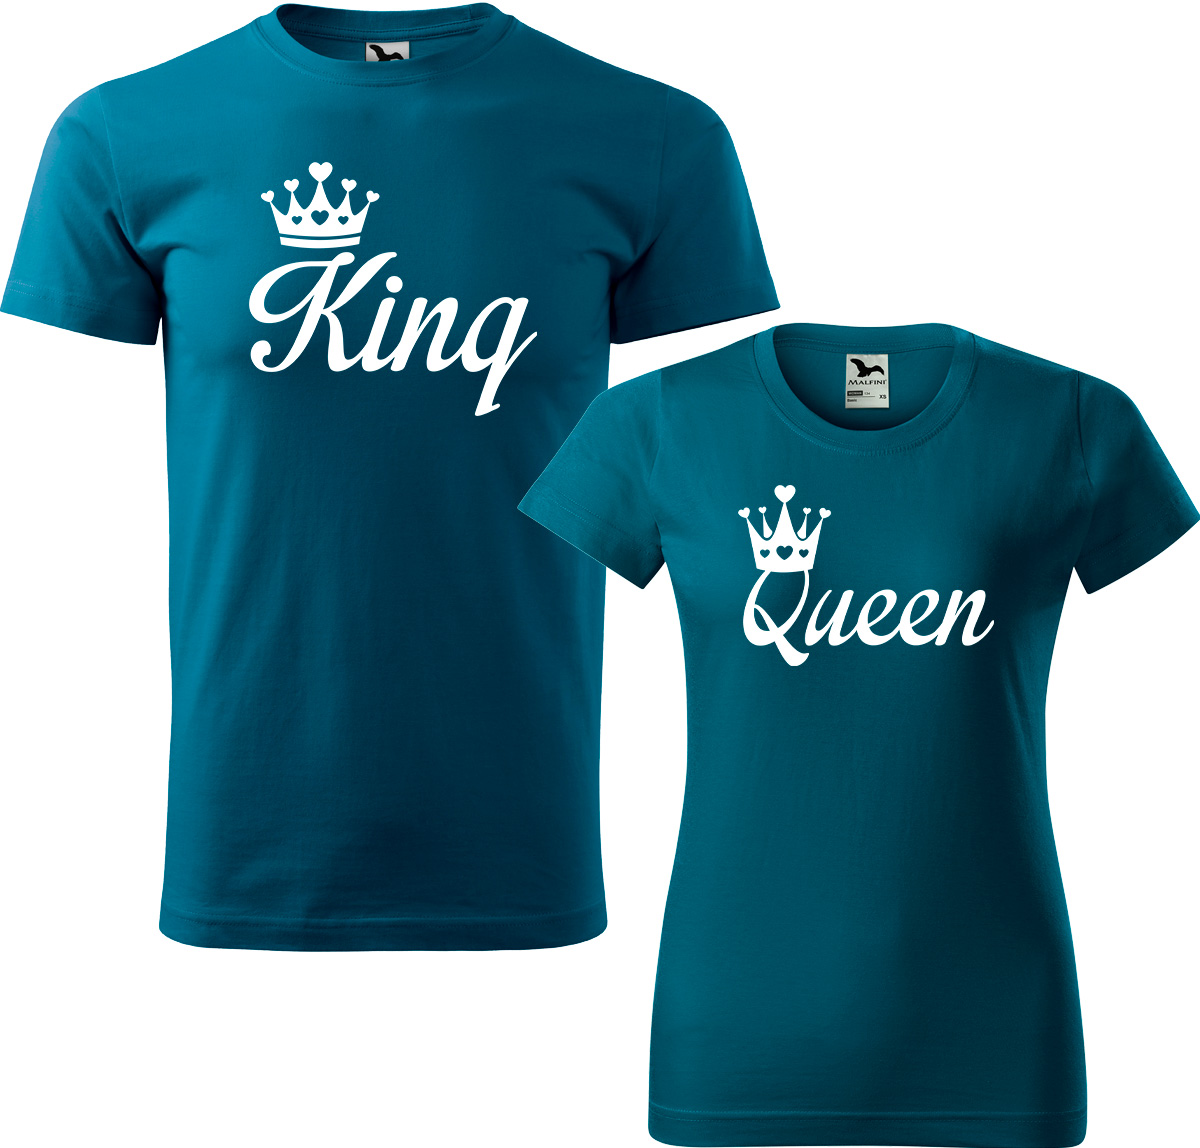 Trička pro páry - King a queen Barva: Petrolejová (93), Velikost dámské tričko: S, Velikost pánské tričko: M